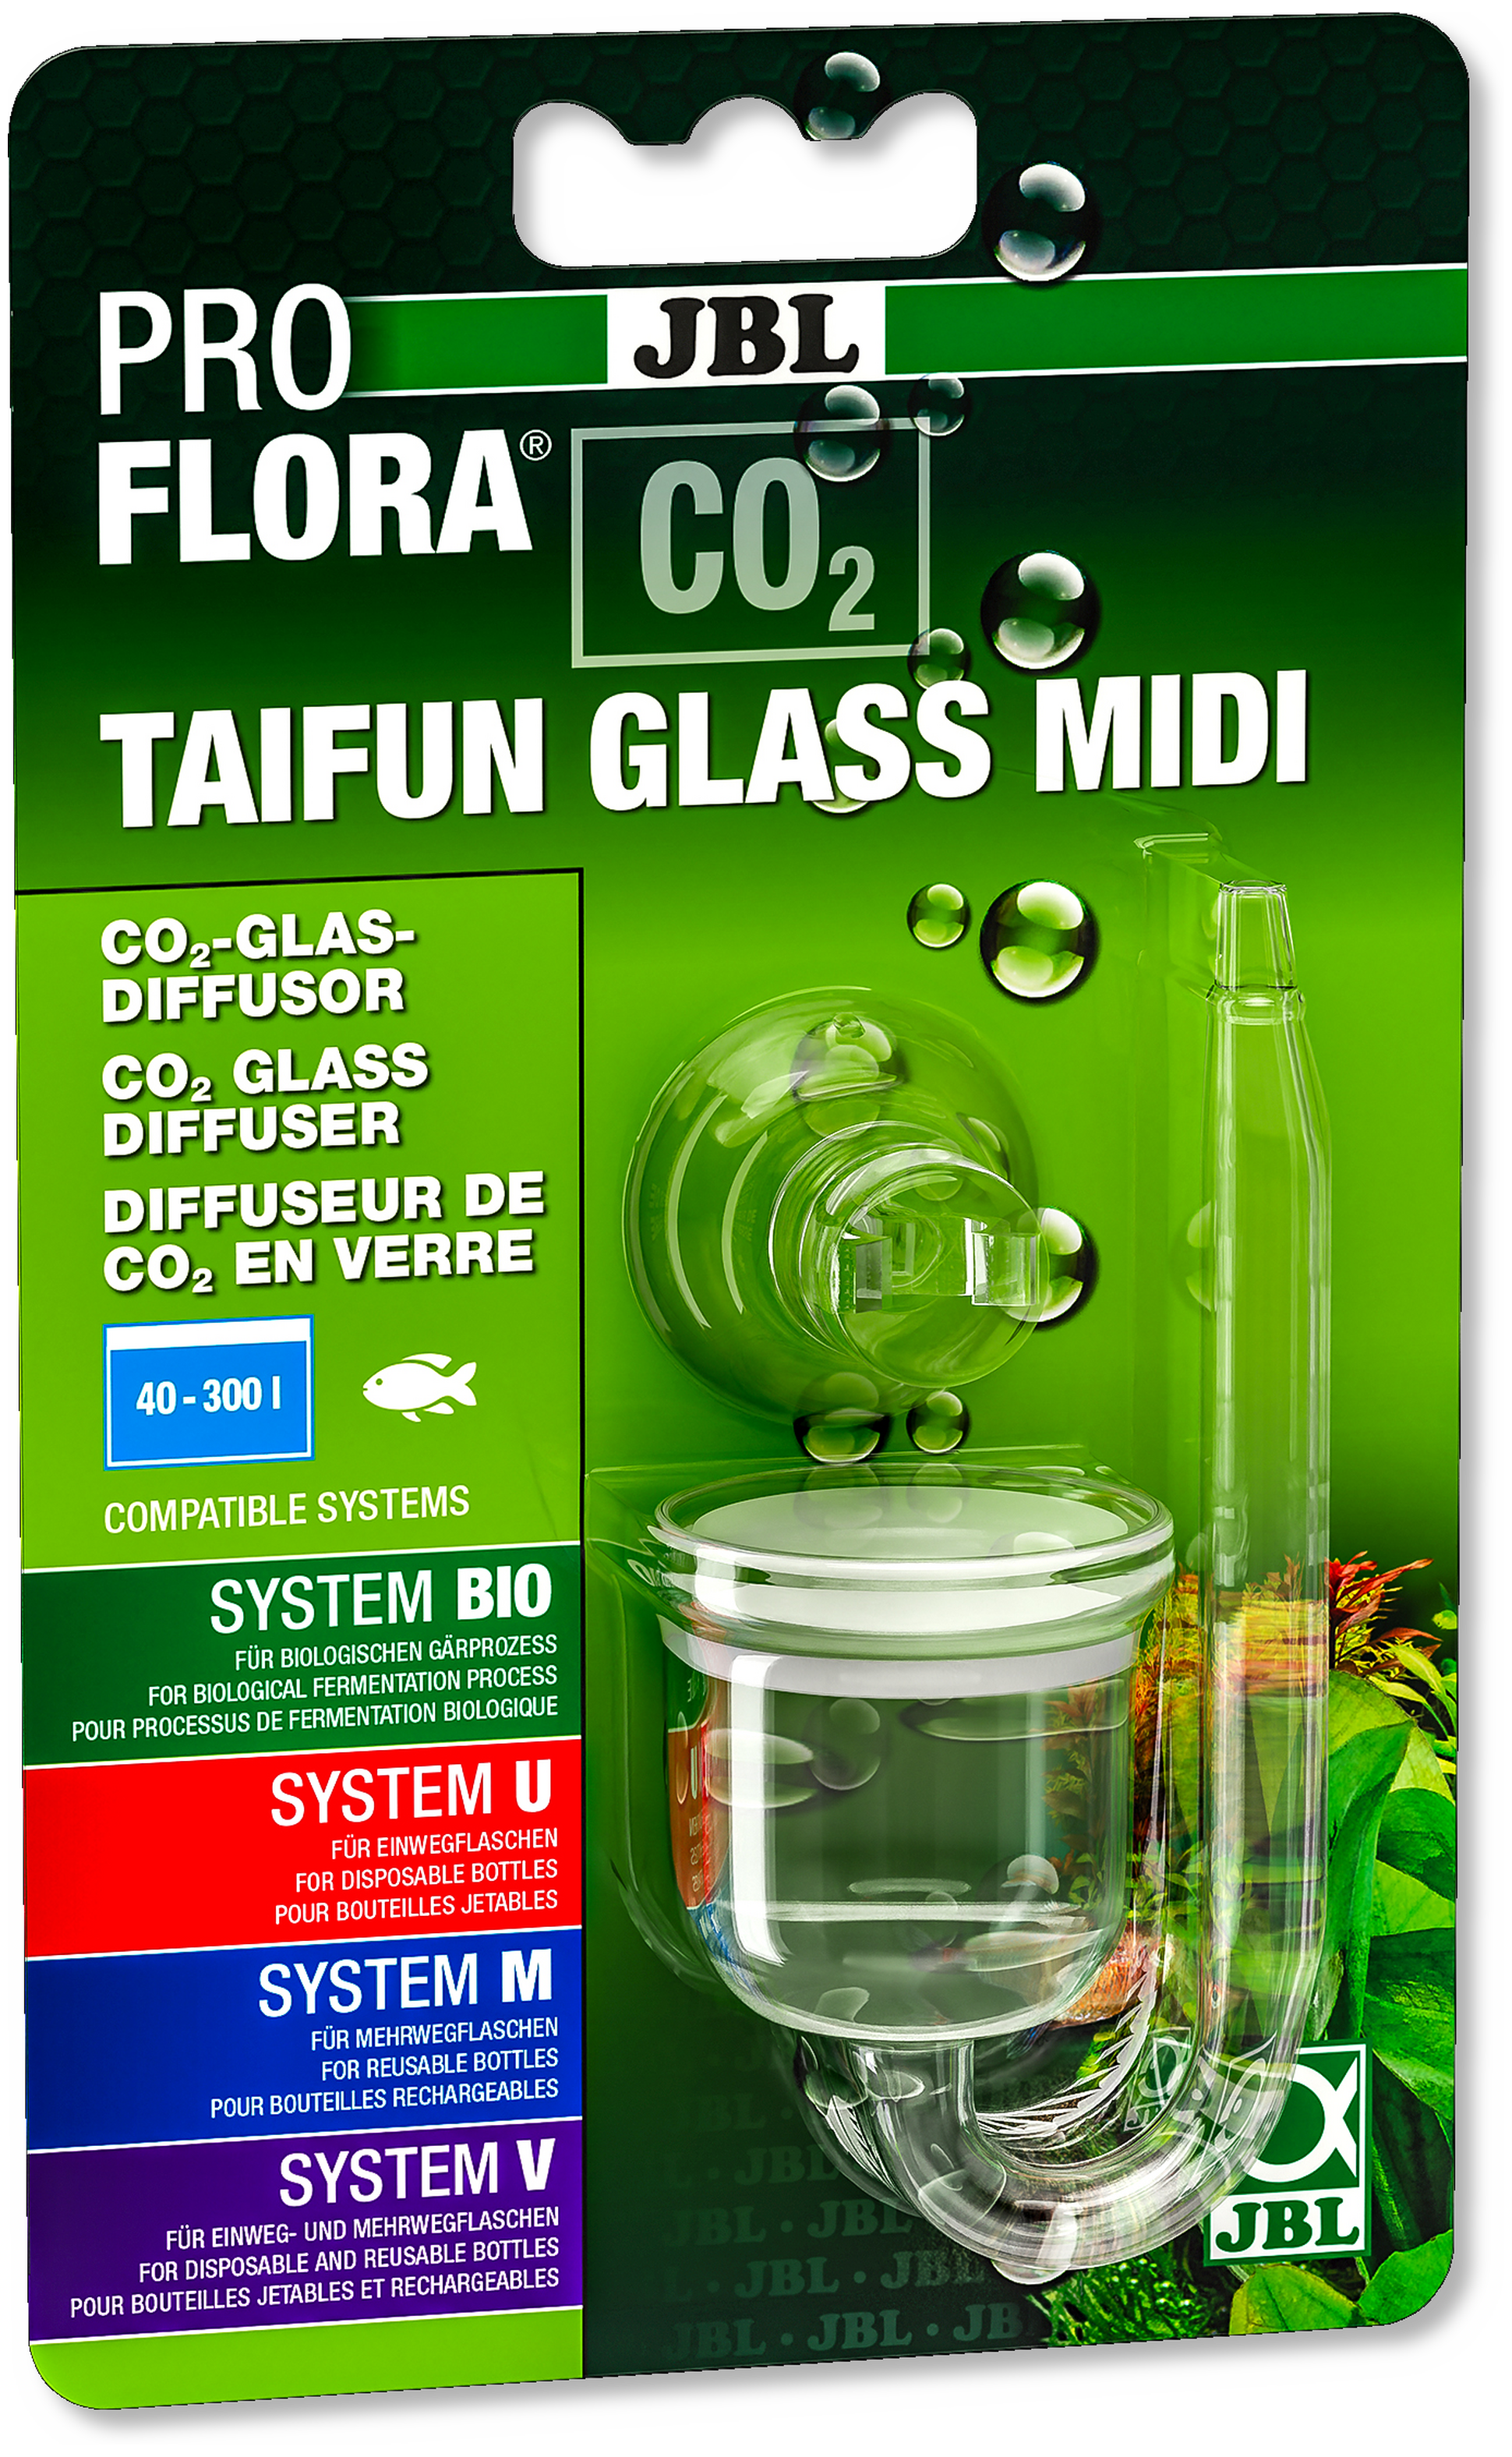 JBL ProFlora CO² TAIFUN GLASS MIDI